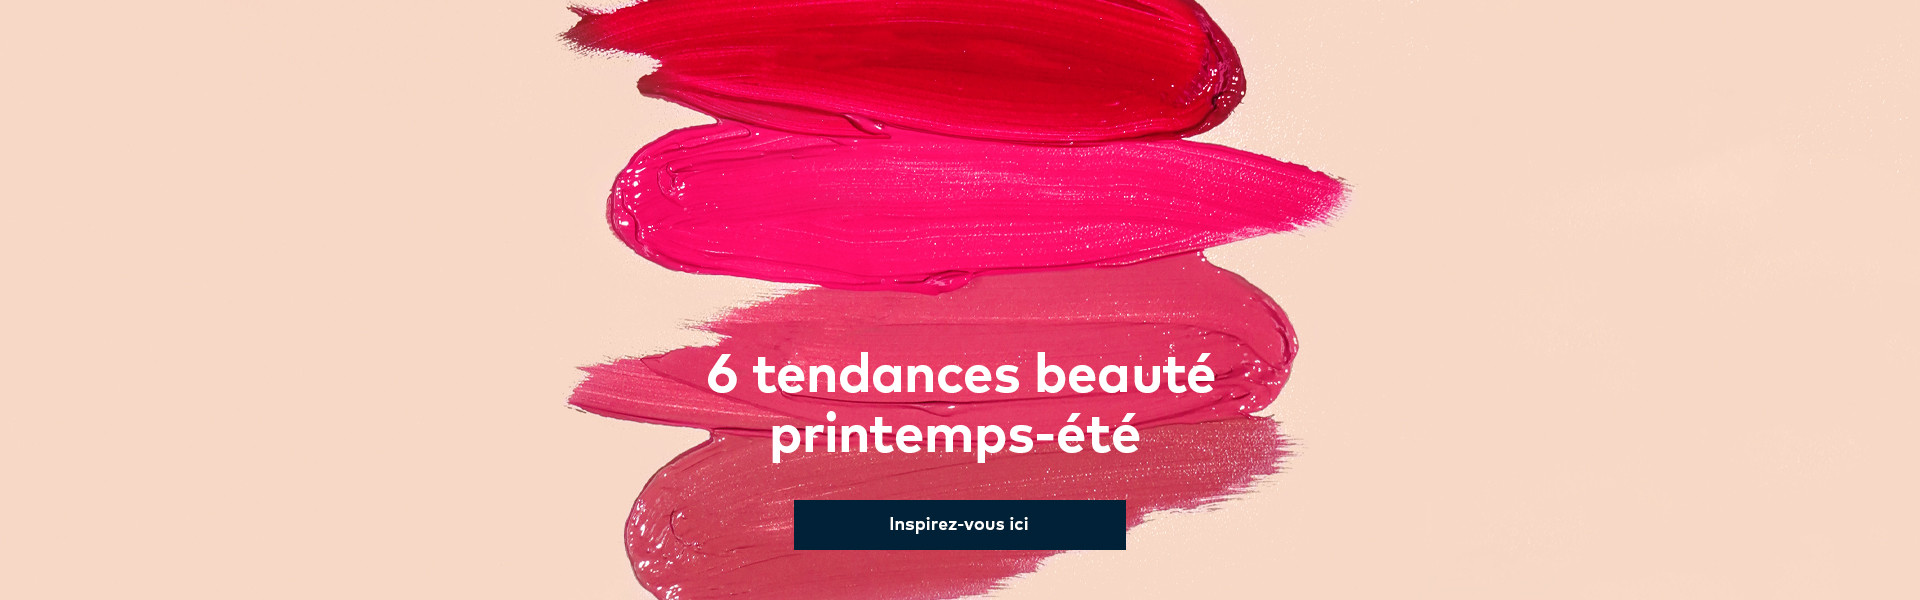 Blogue Beauté